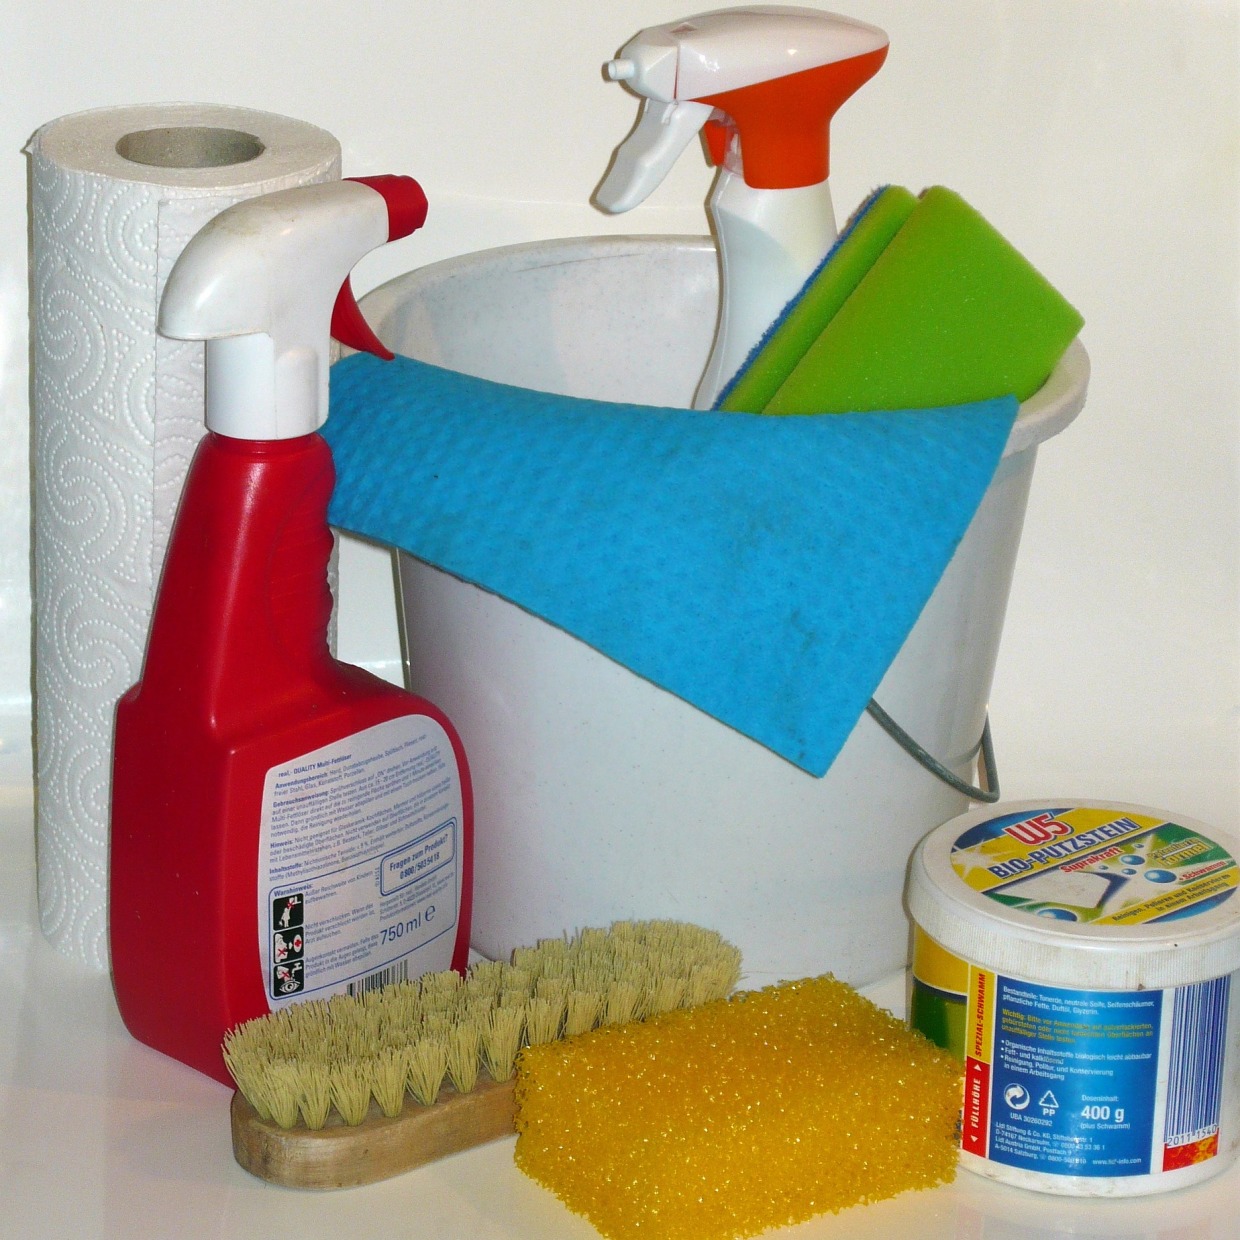  洗剤やストックでごちゃつきがちな洗面台の下。「使うものがすぐに取り出せる」収納術 